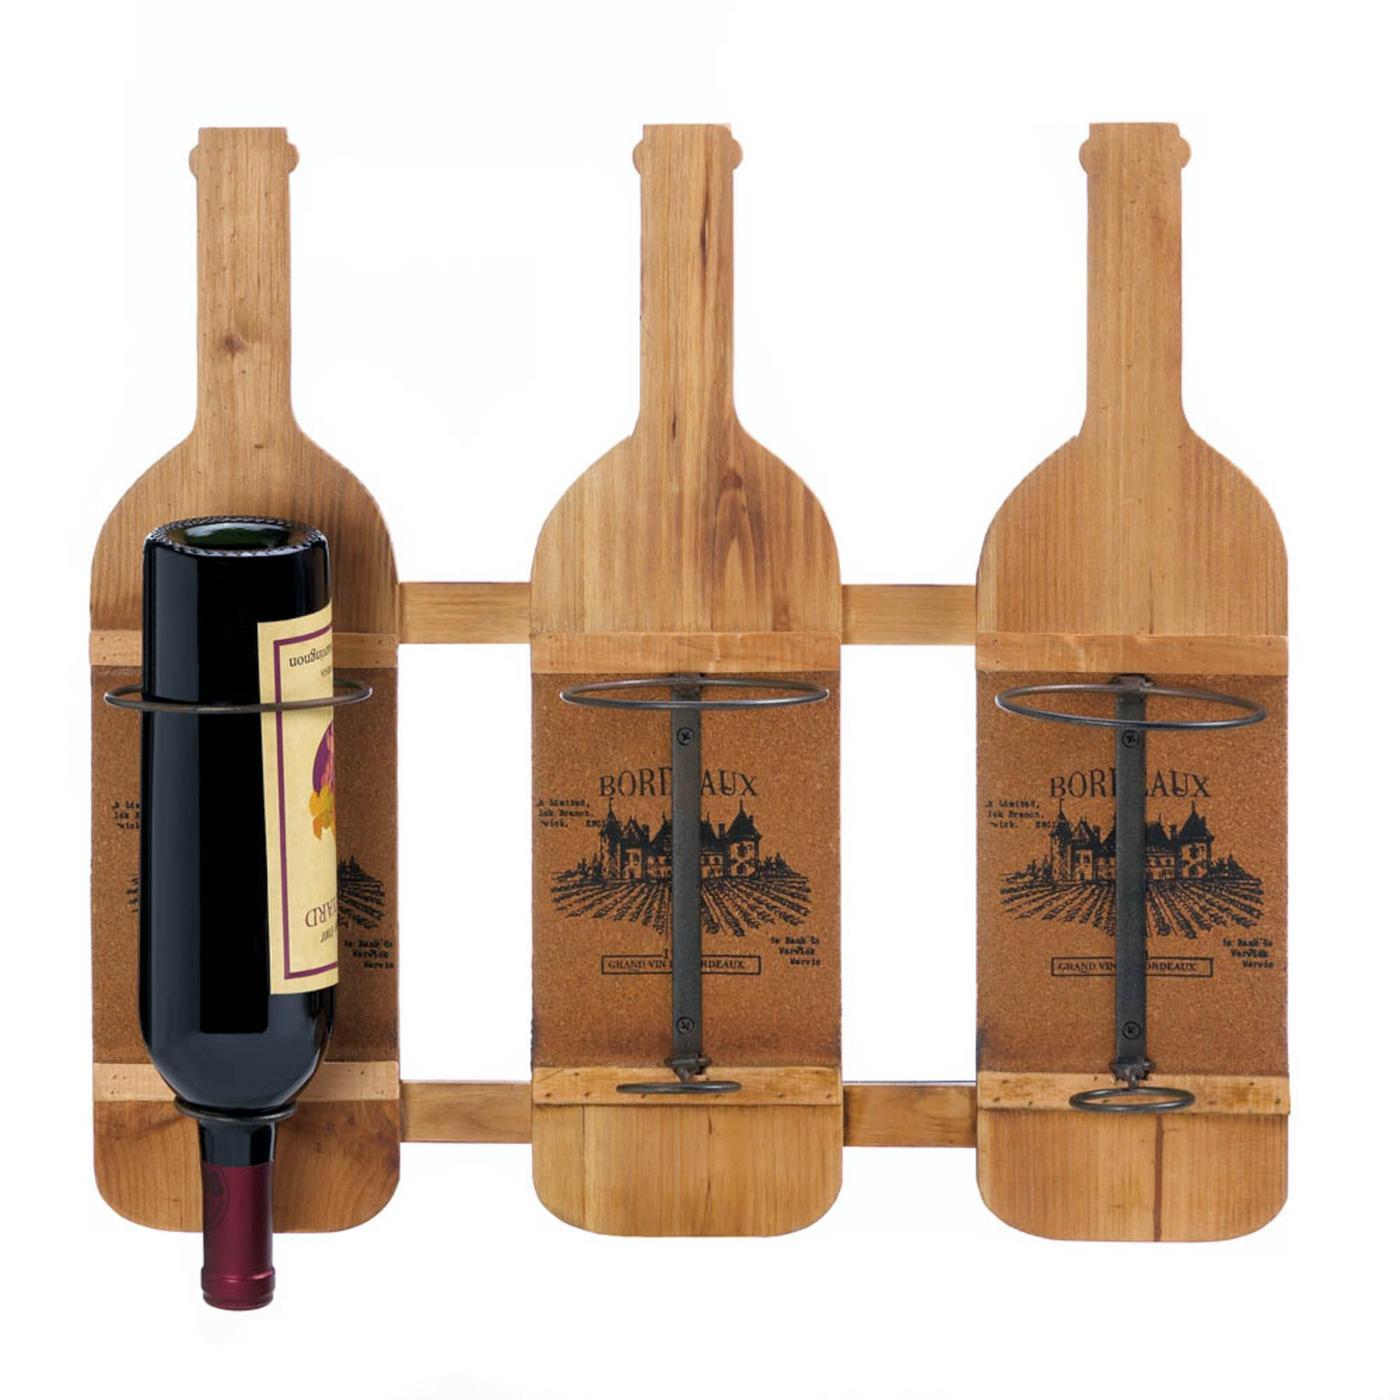 Bordeaux Wooden Bottle Holder for 3 Bottles of Your Favorite Vintage Wine - $59.95